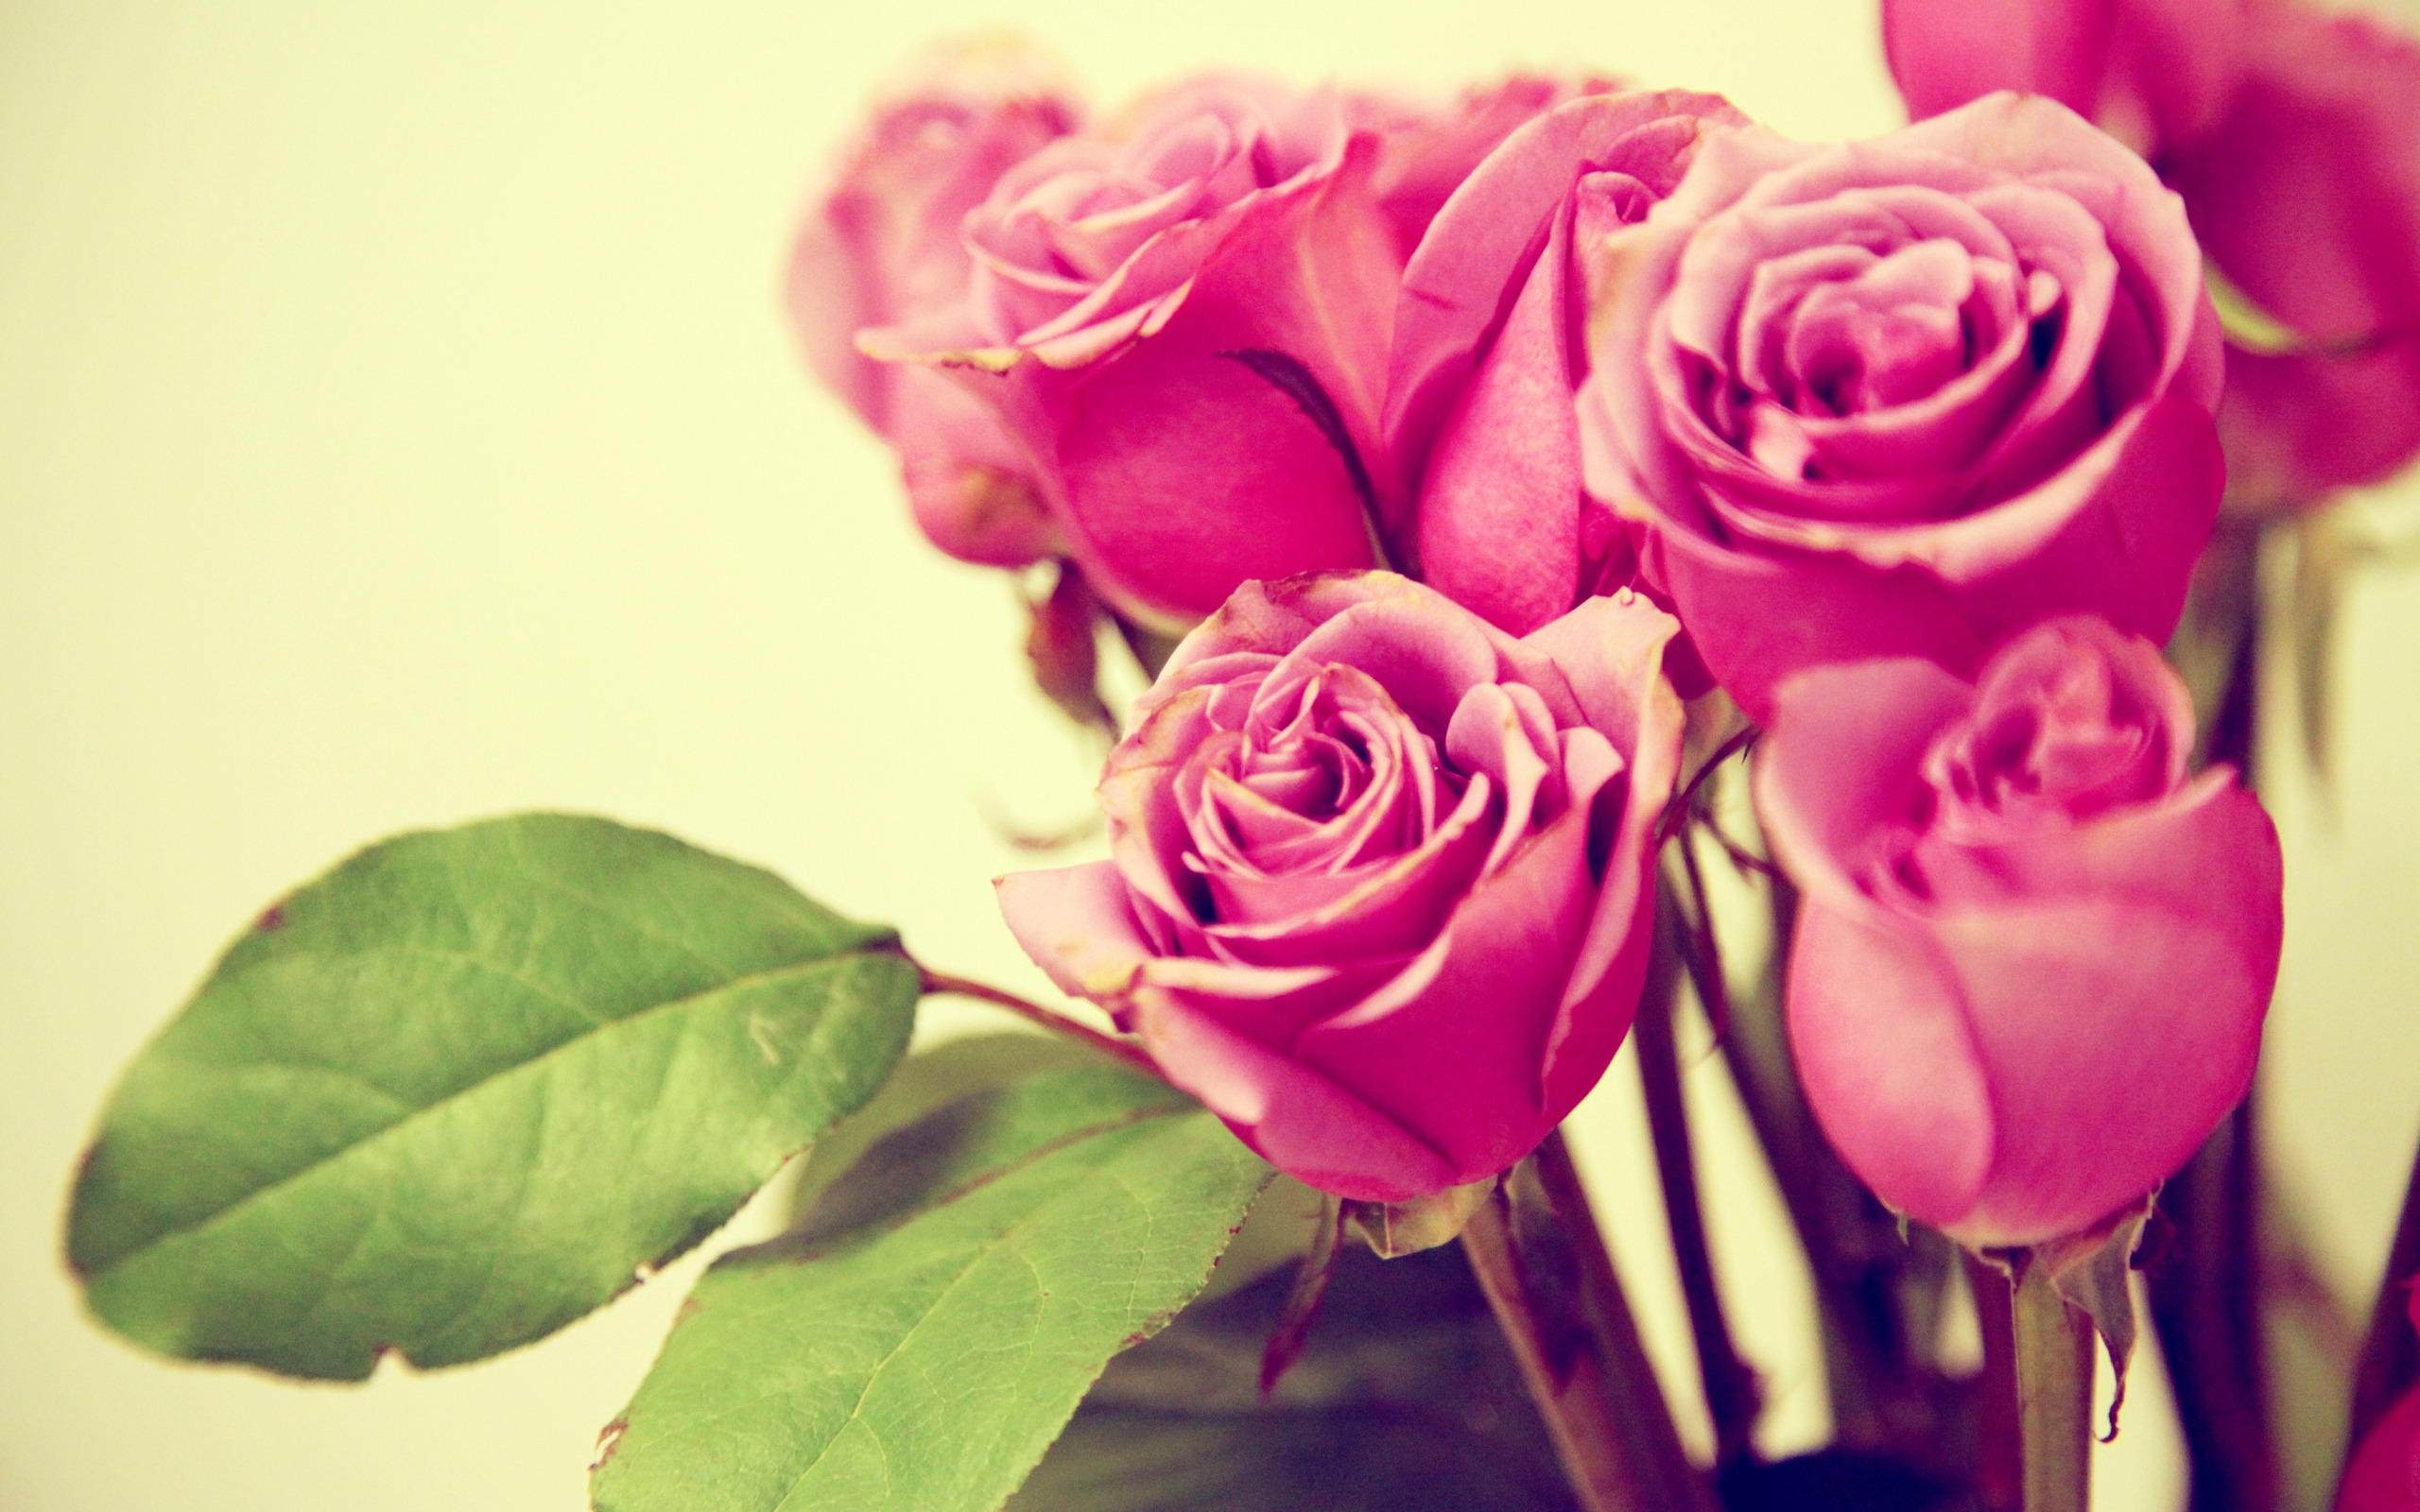 Обои на телефон розы розовые